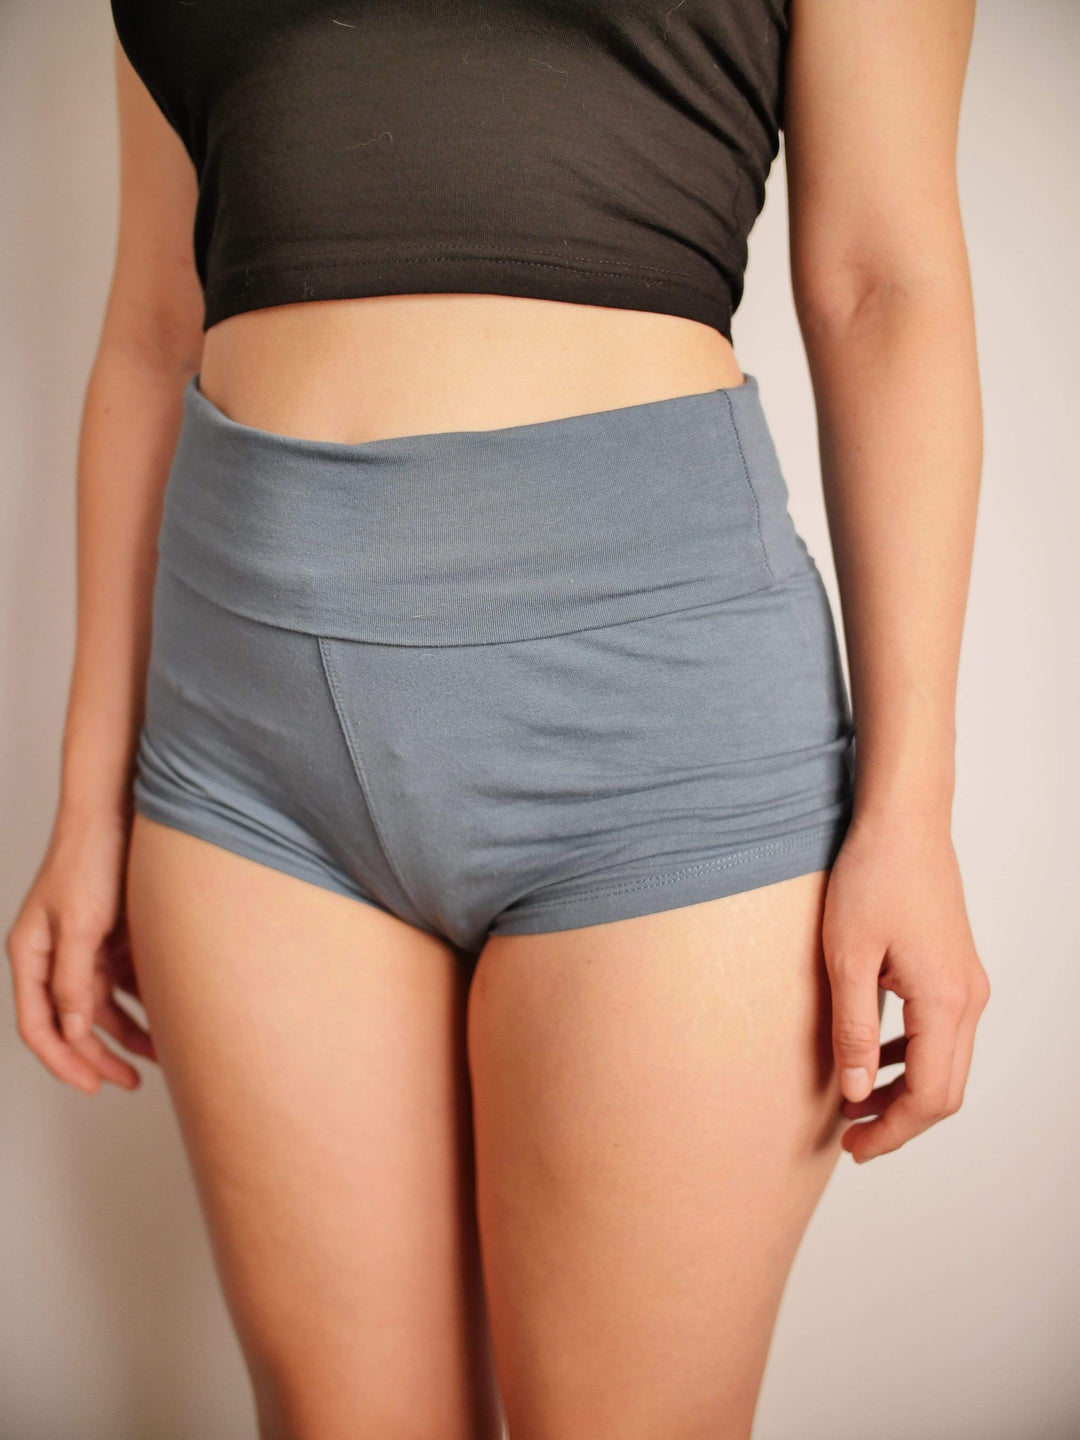 PixelThat Punderwear Yoga Shorts I've Got Buns Yoga Shorts/Pants